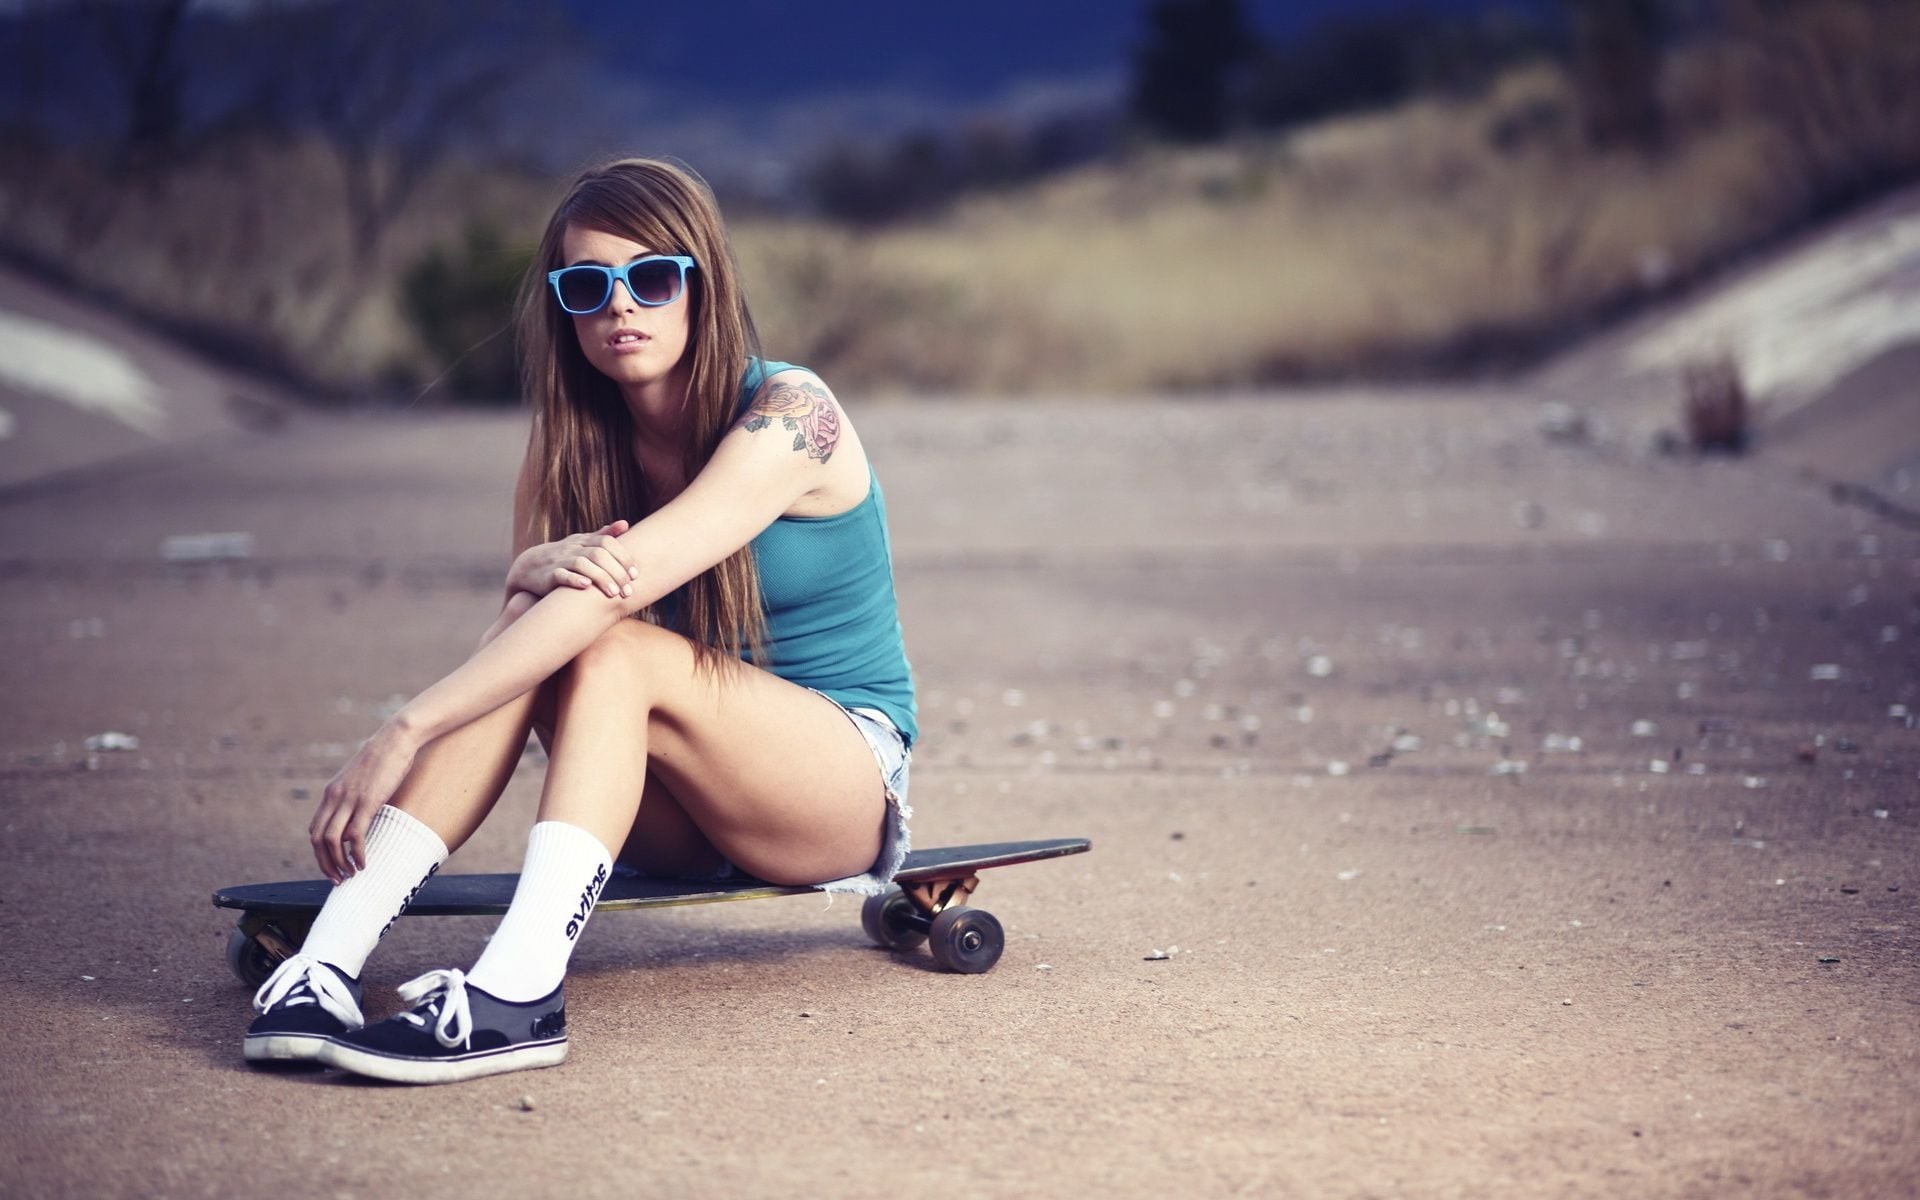 Skateboarding girl